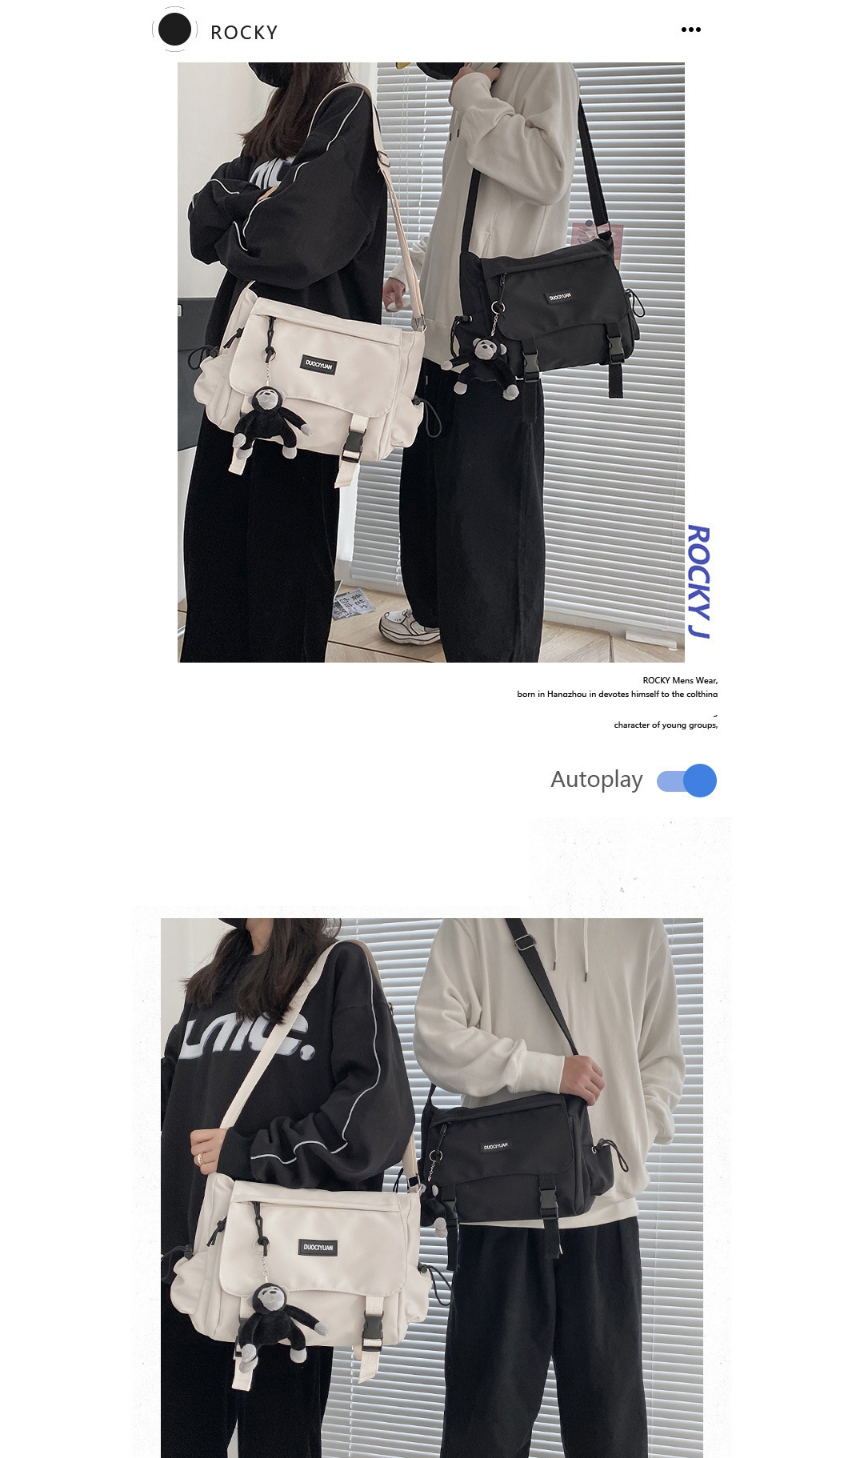 Fashion Black Without Pendant Letter Mortise Lock Crossbody Shoulder Bag,Messenger bags